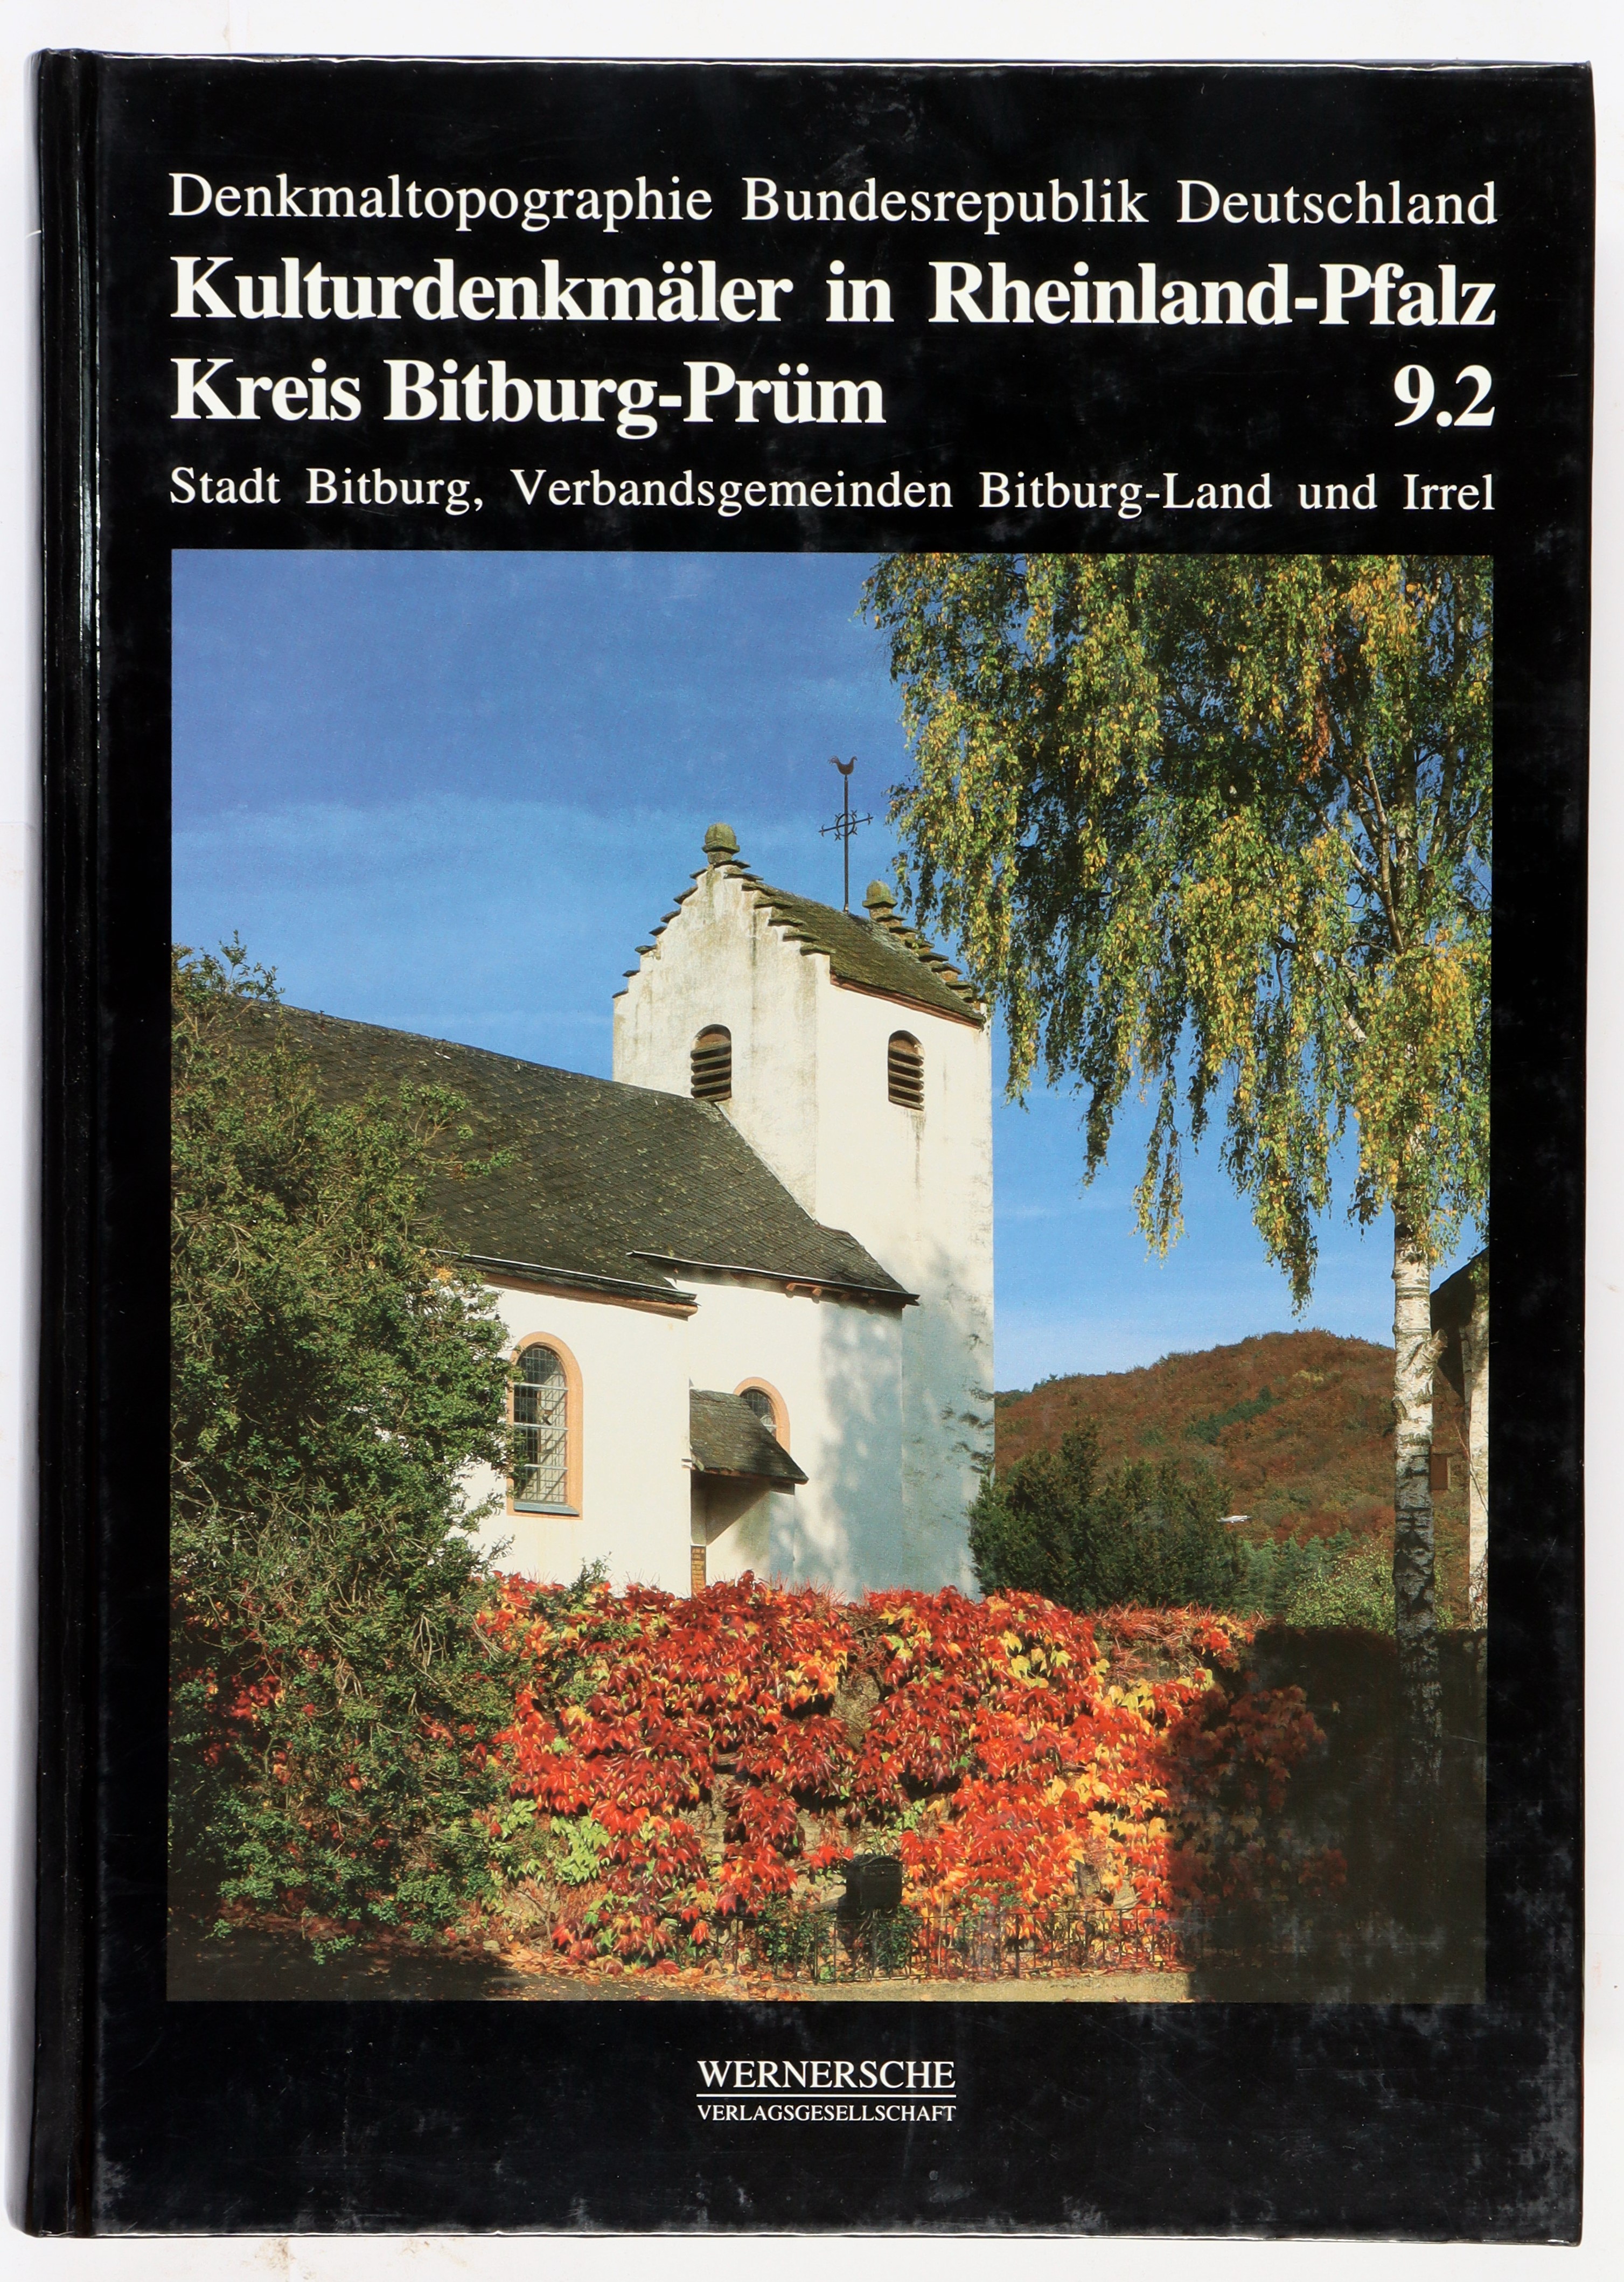 Kulturdenkmäler in Rheinland-Pfalz. Bd. 9: Kreis Bitburg-Prüm 2: Stadt Bitburg, Verbandsgemeinden Bitburg-Land und Irrel. - Bitburg-Land, Irrel - Altmann, B. und Hans Caspary,